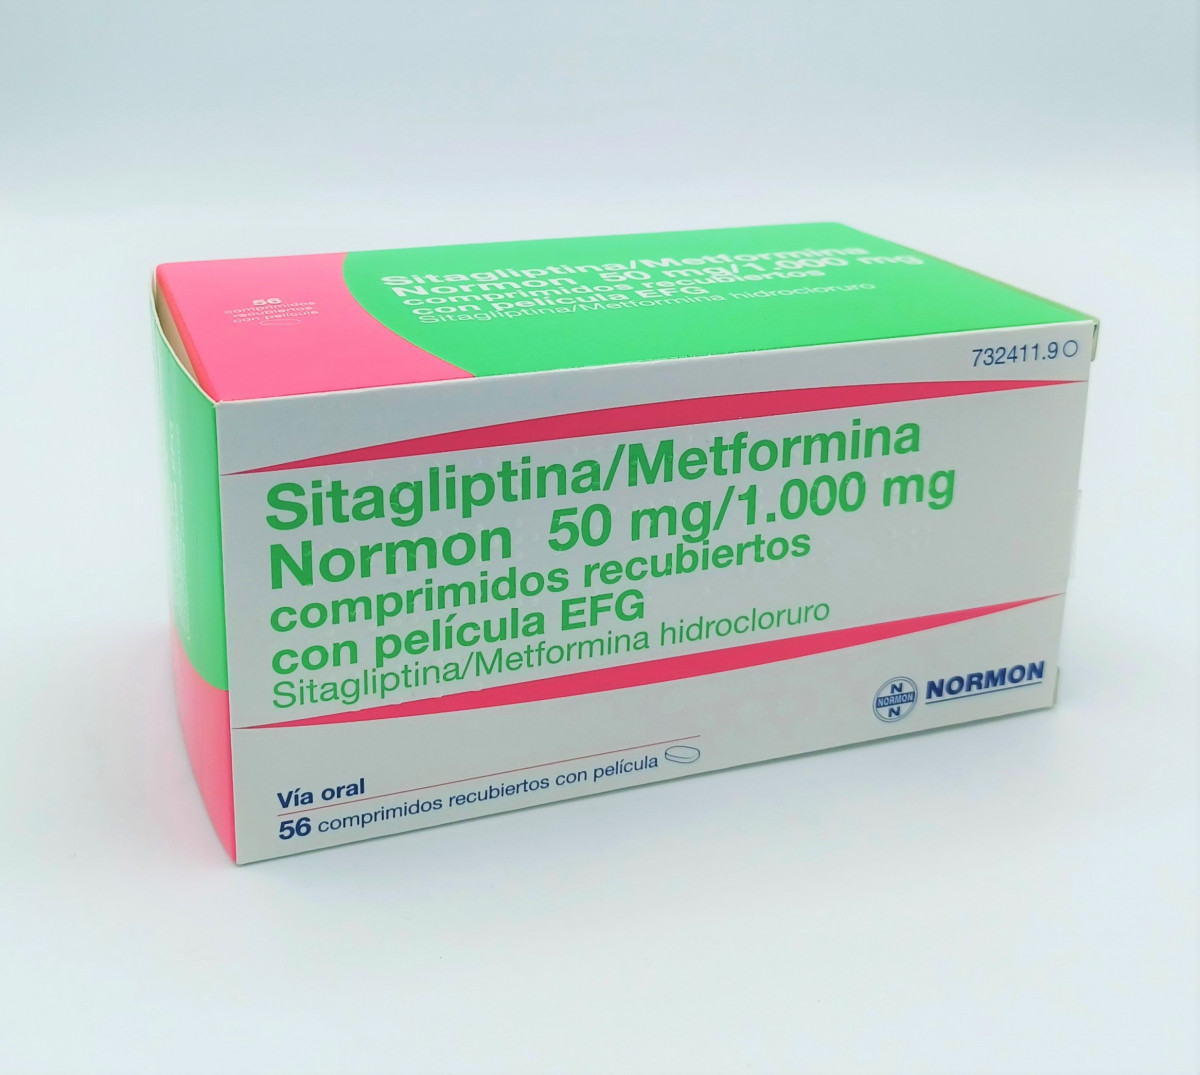 SITAGLIPTINA/METFORMINA NORMON 50 MG/1.000 MG COMPRIMIDOS RECUBIERTOS CON PELICULA EFG, 56 comprimidos (Al/PA/Al/PVC) fotografía del envase.